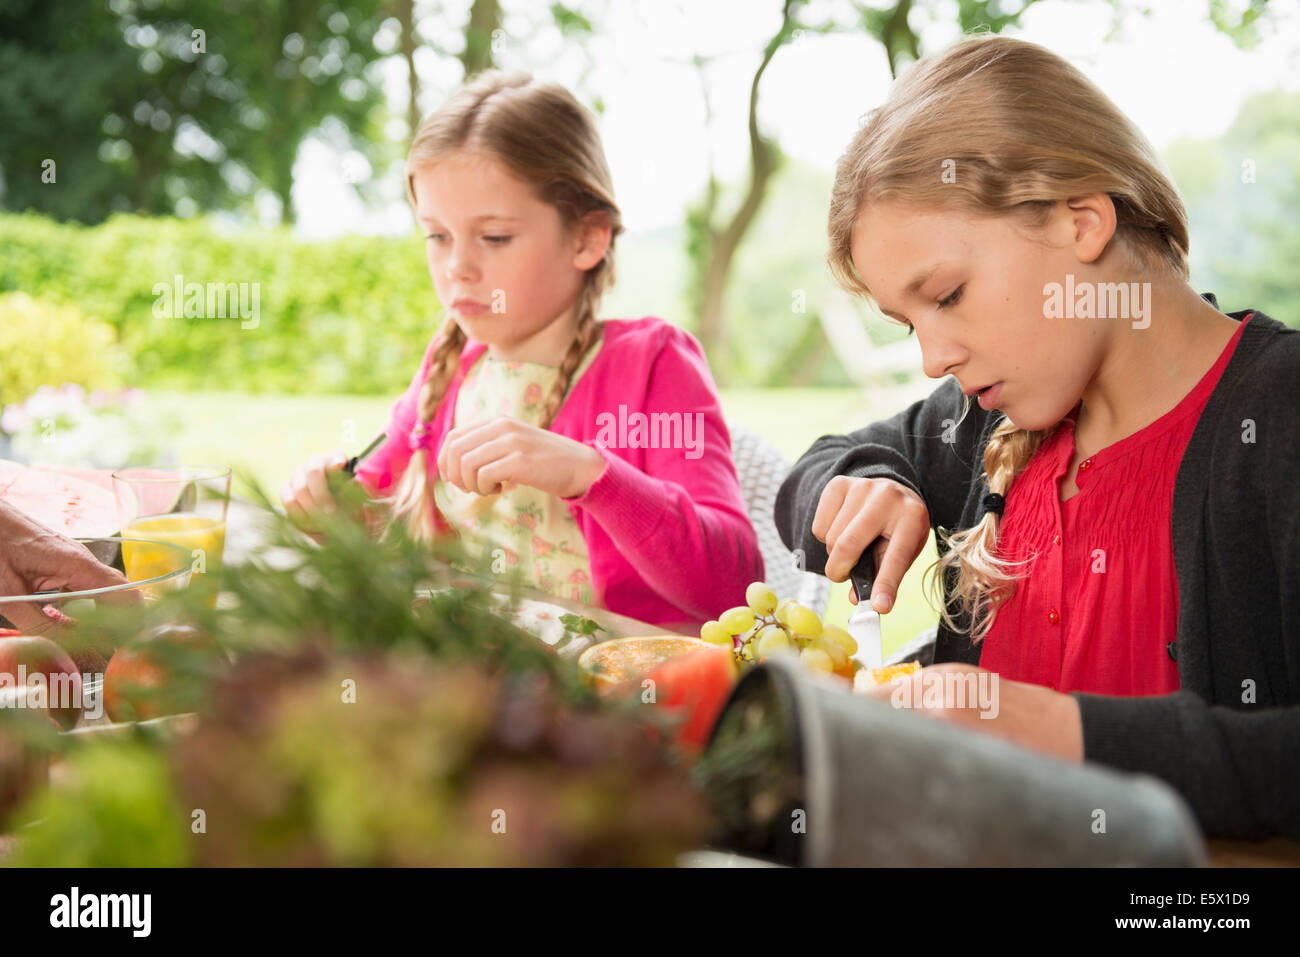 Zwei Schwestern bei Terrassentisch frisches Obst schneiden Stockfoto